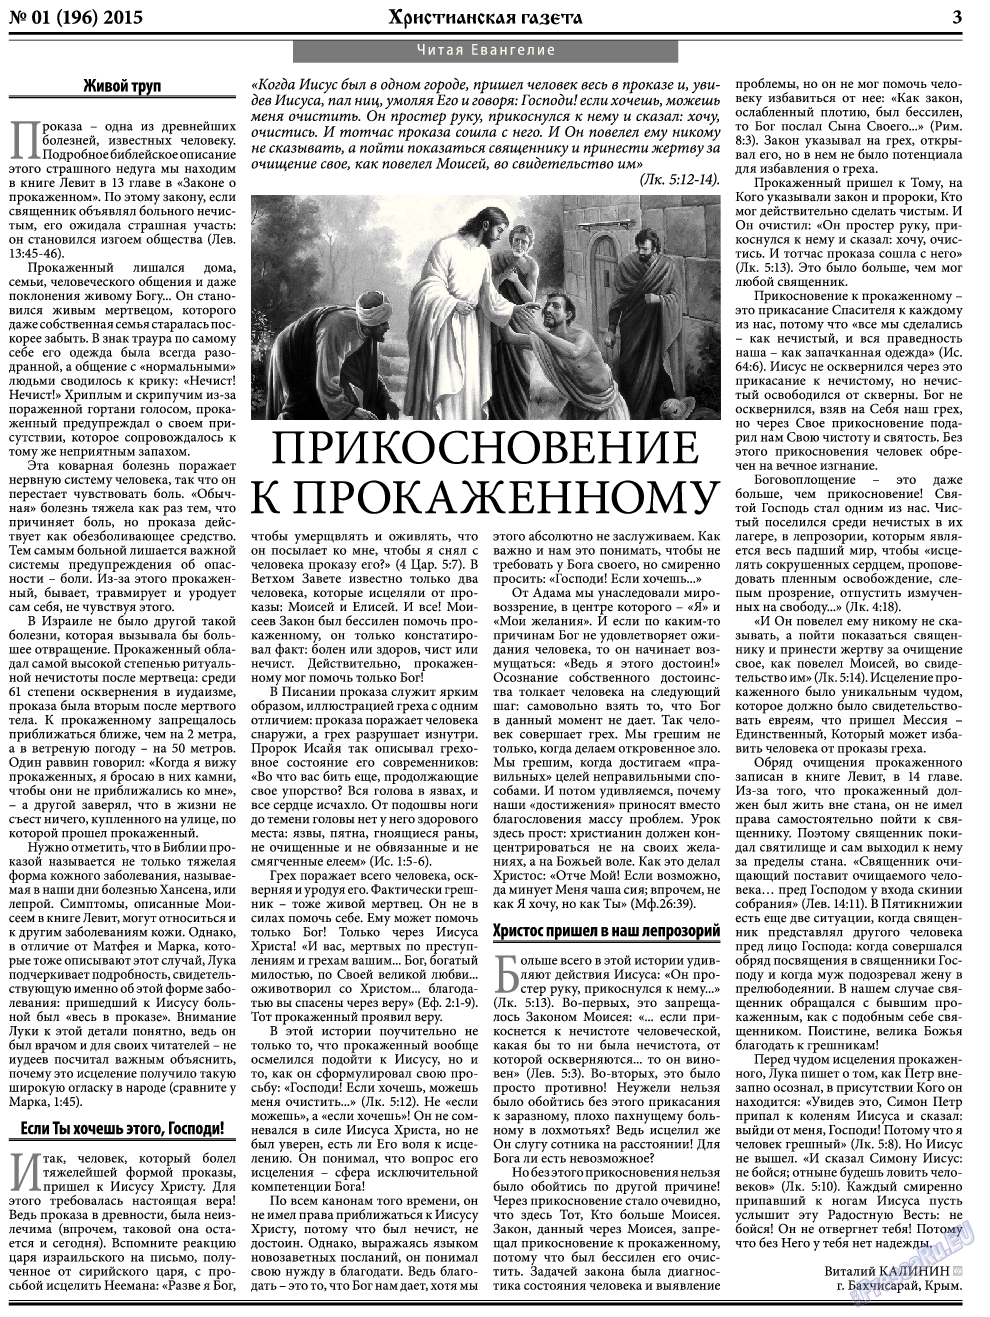 Христианская газета, газета. 2015 №1 стр.3